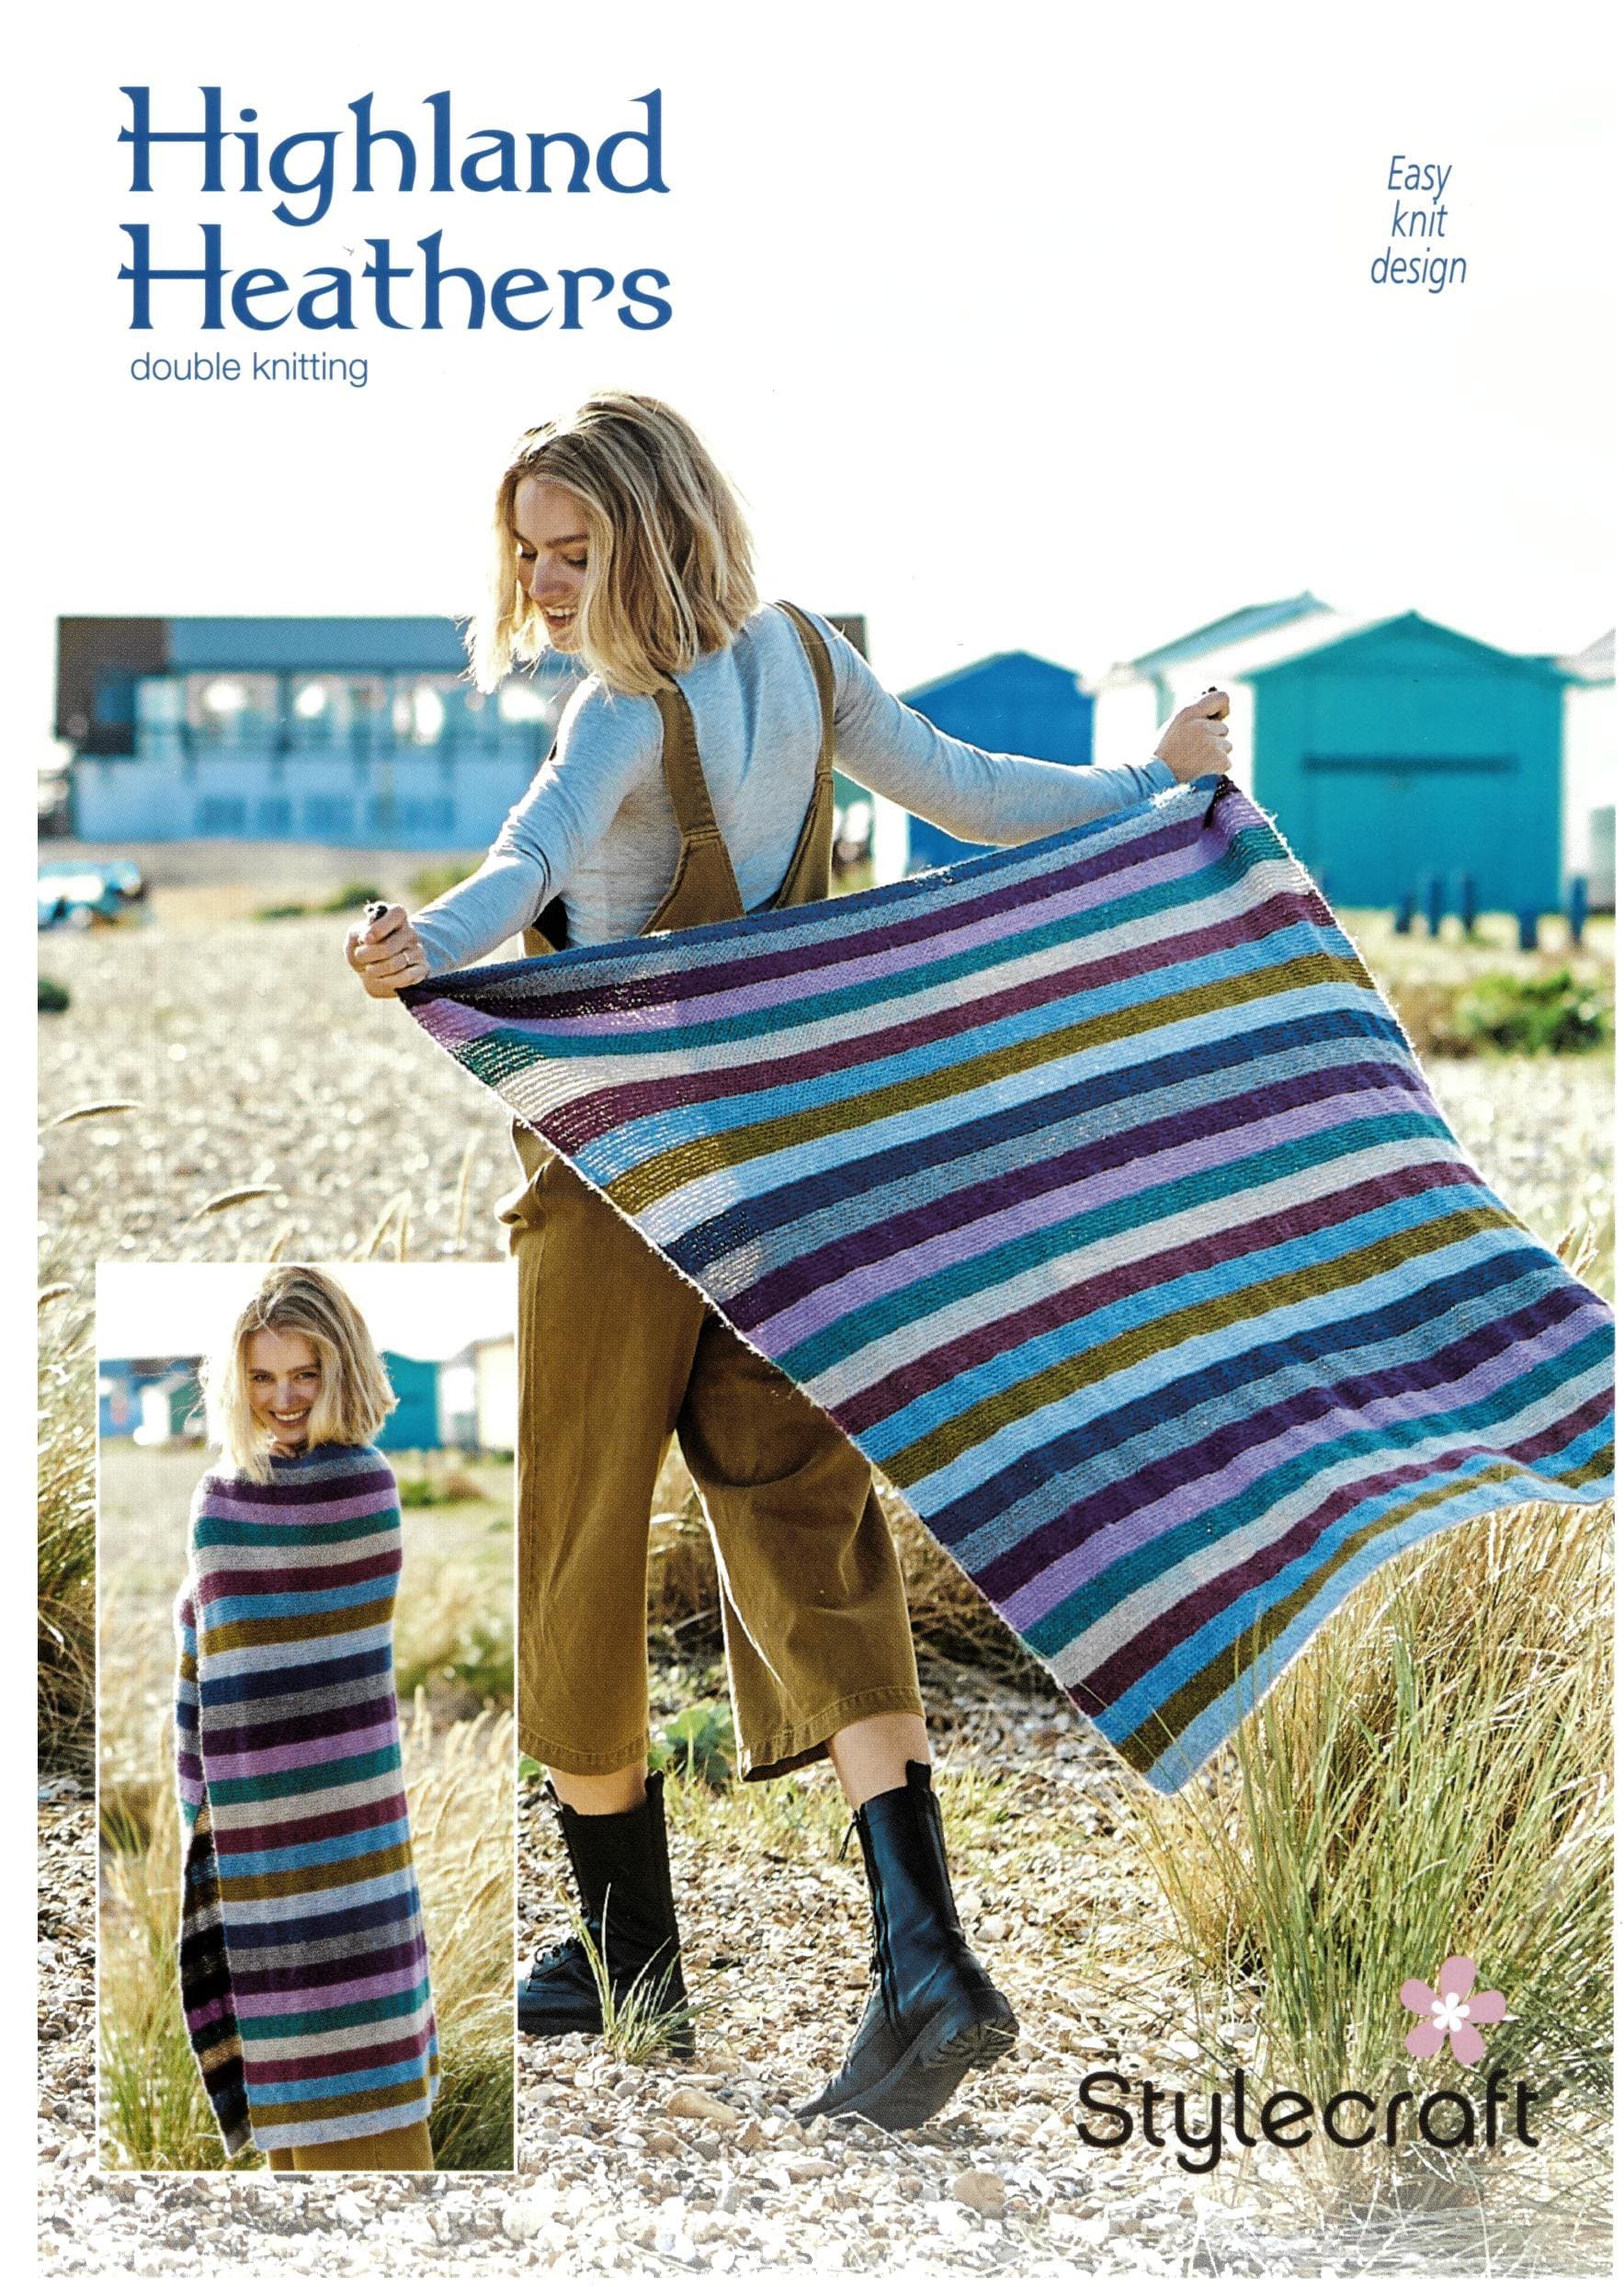 Stylecraft Yarn Stylecraft Garter Stitch Blanket Pack in Highland Heathers DK